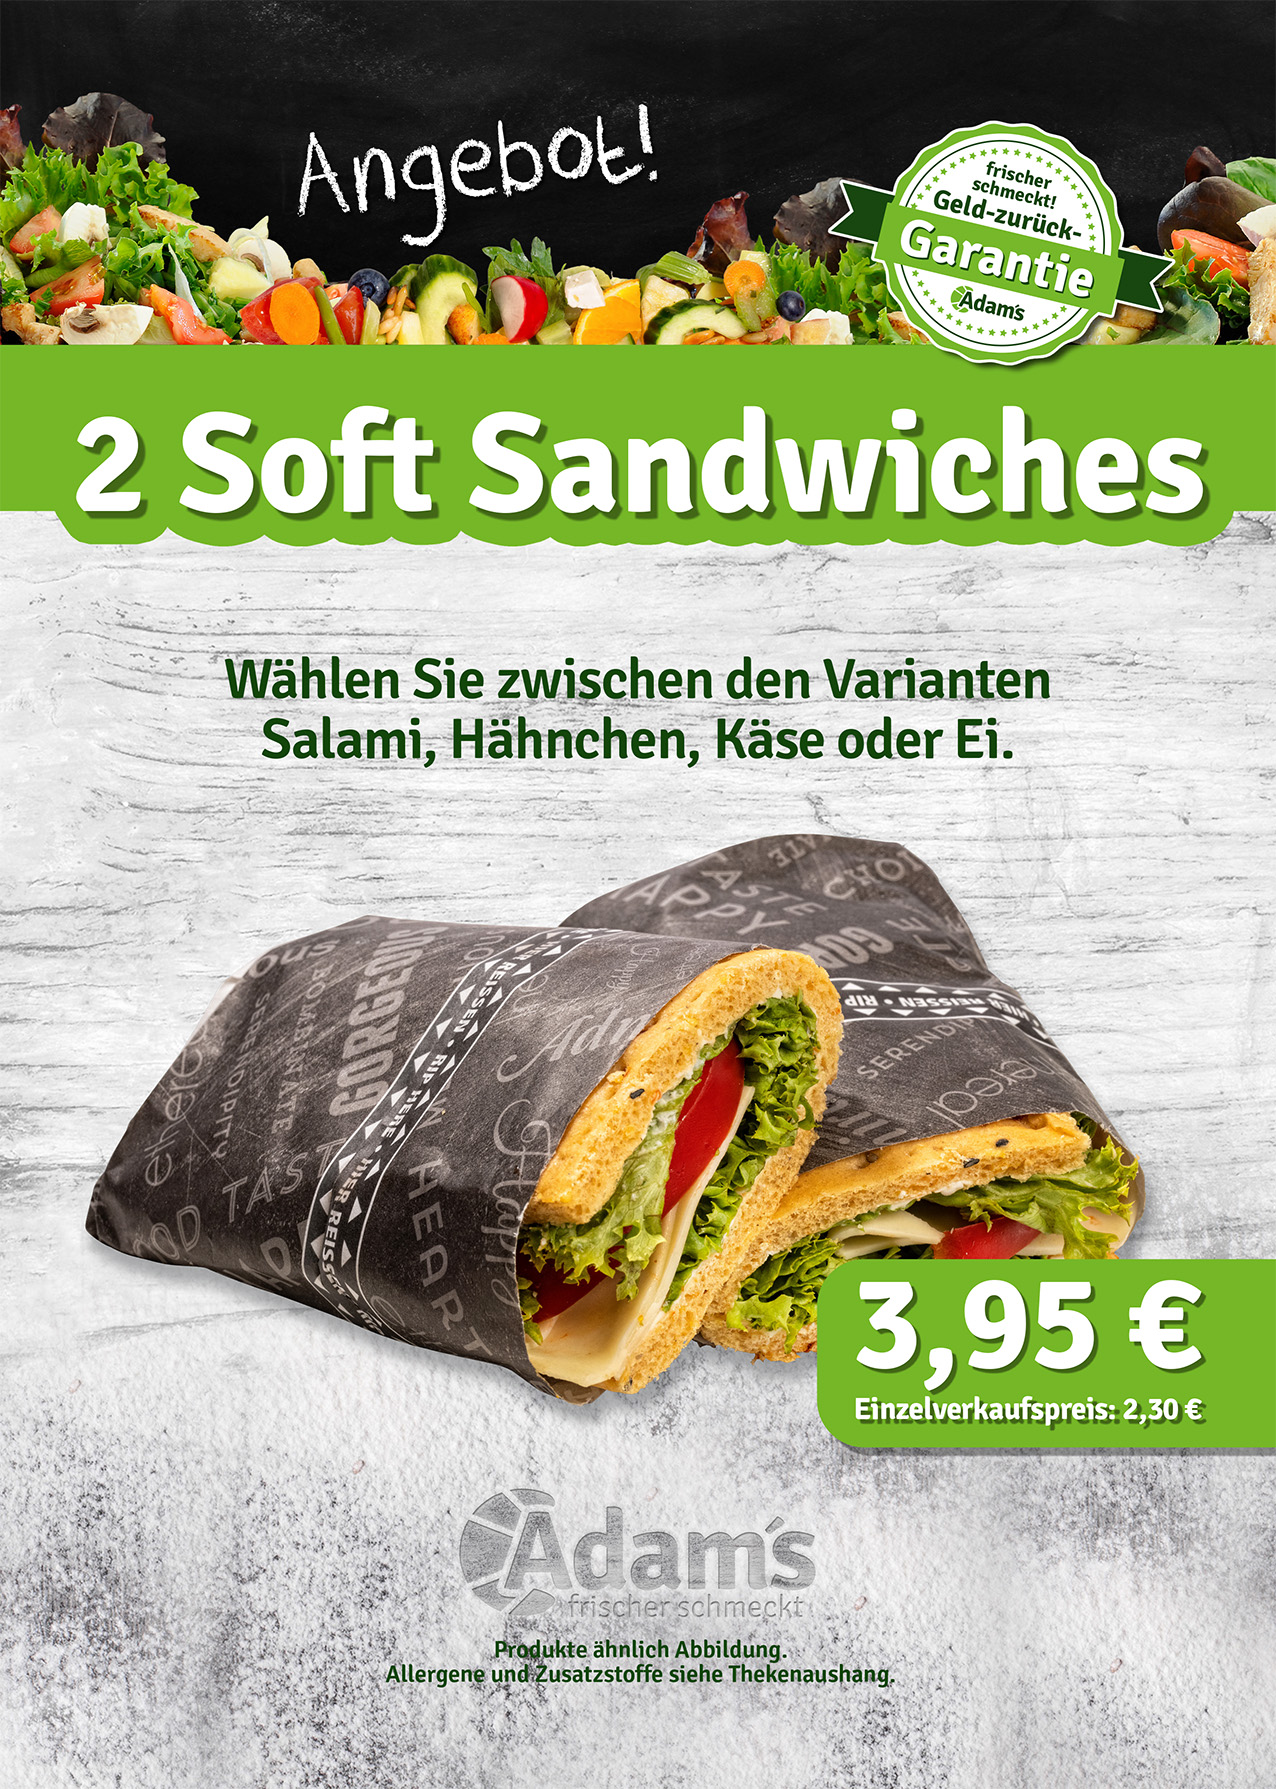 Soft Sandwiches